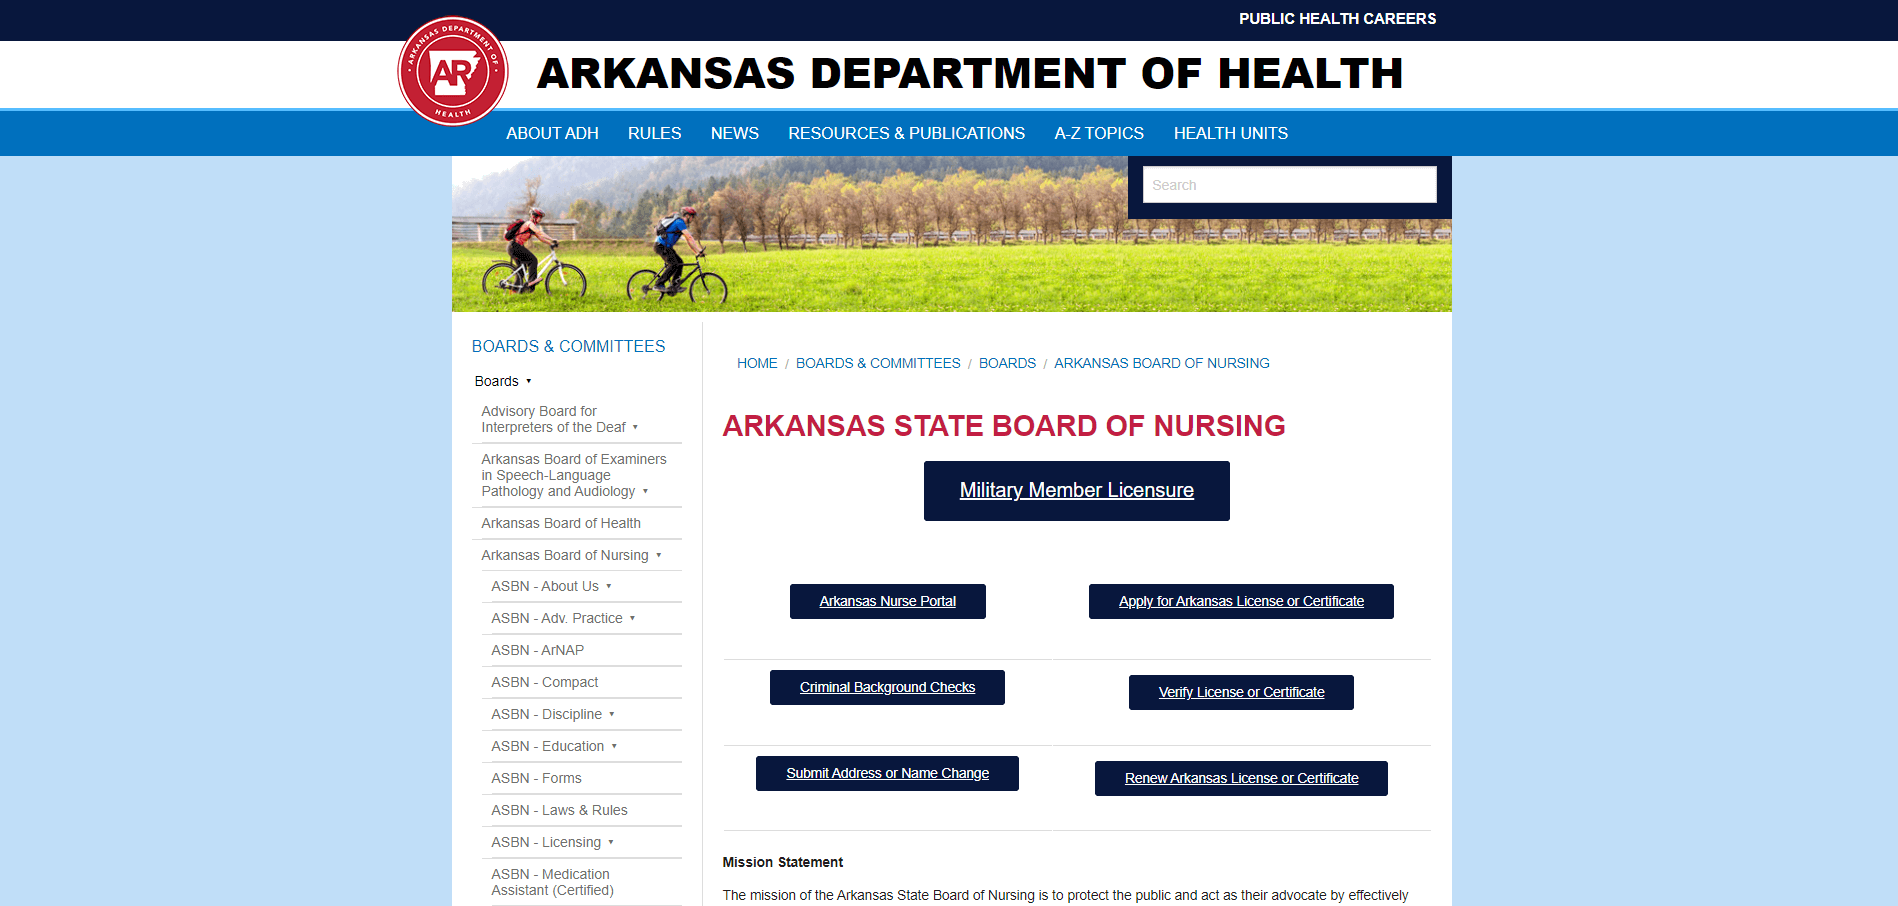 Arkansas Board of Nursing